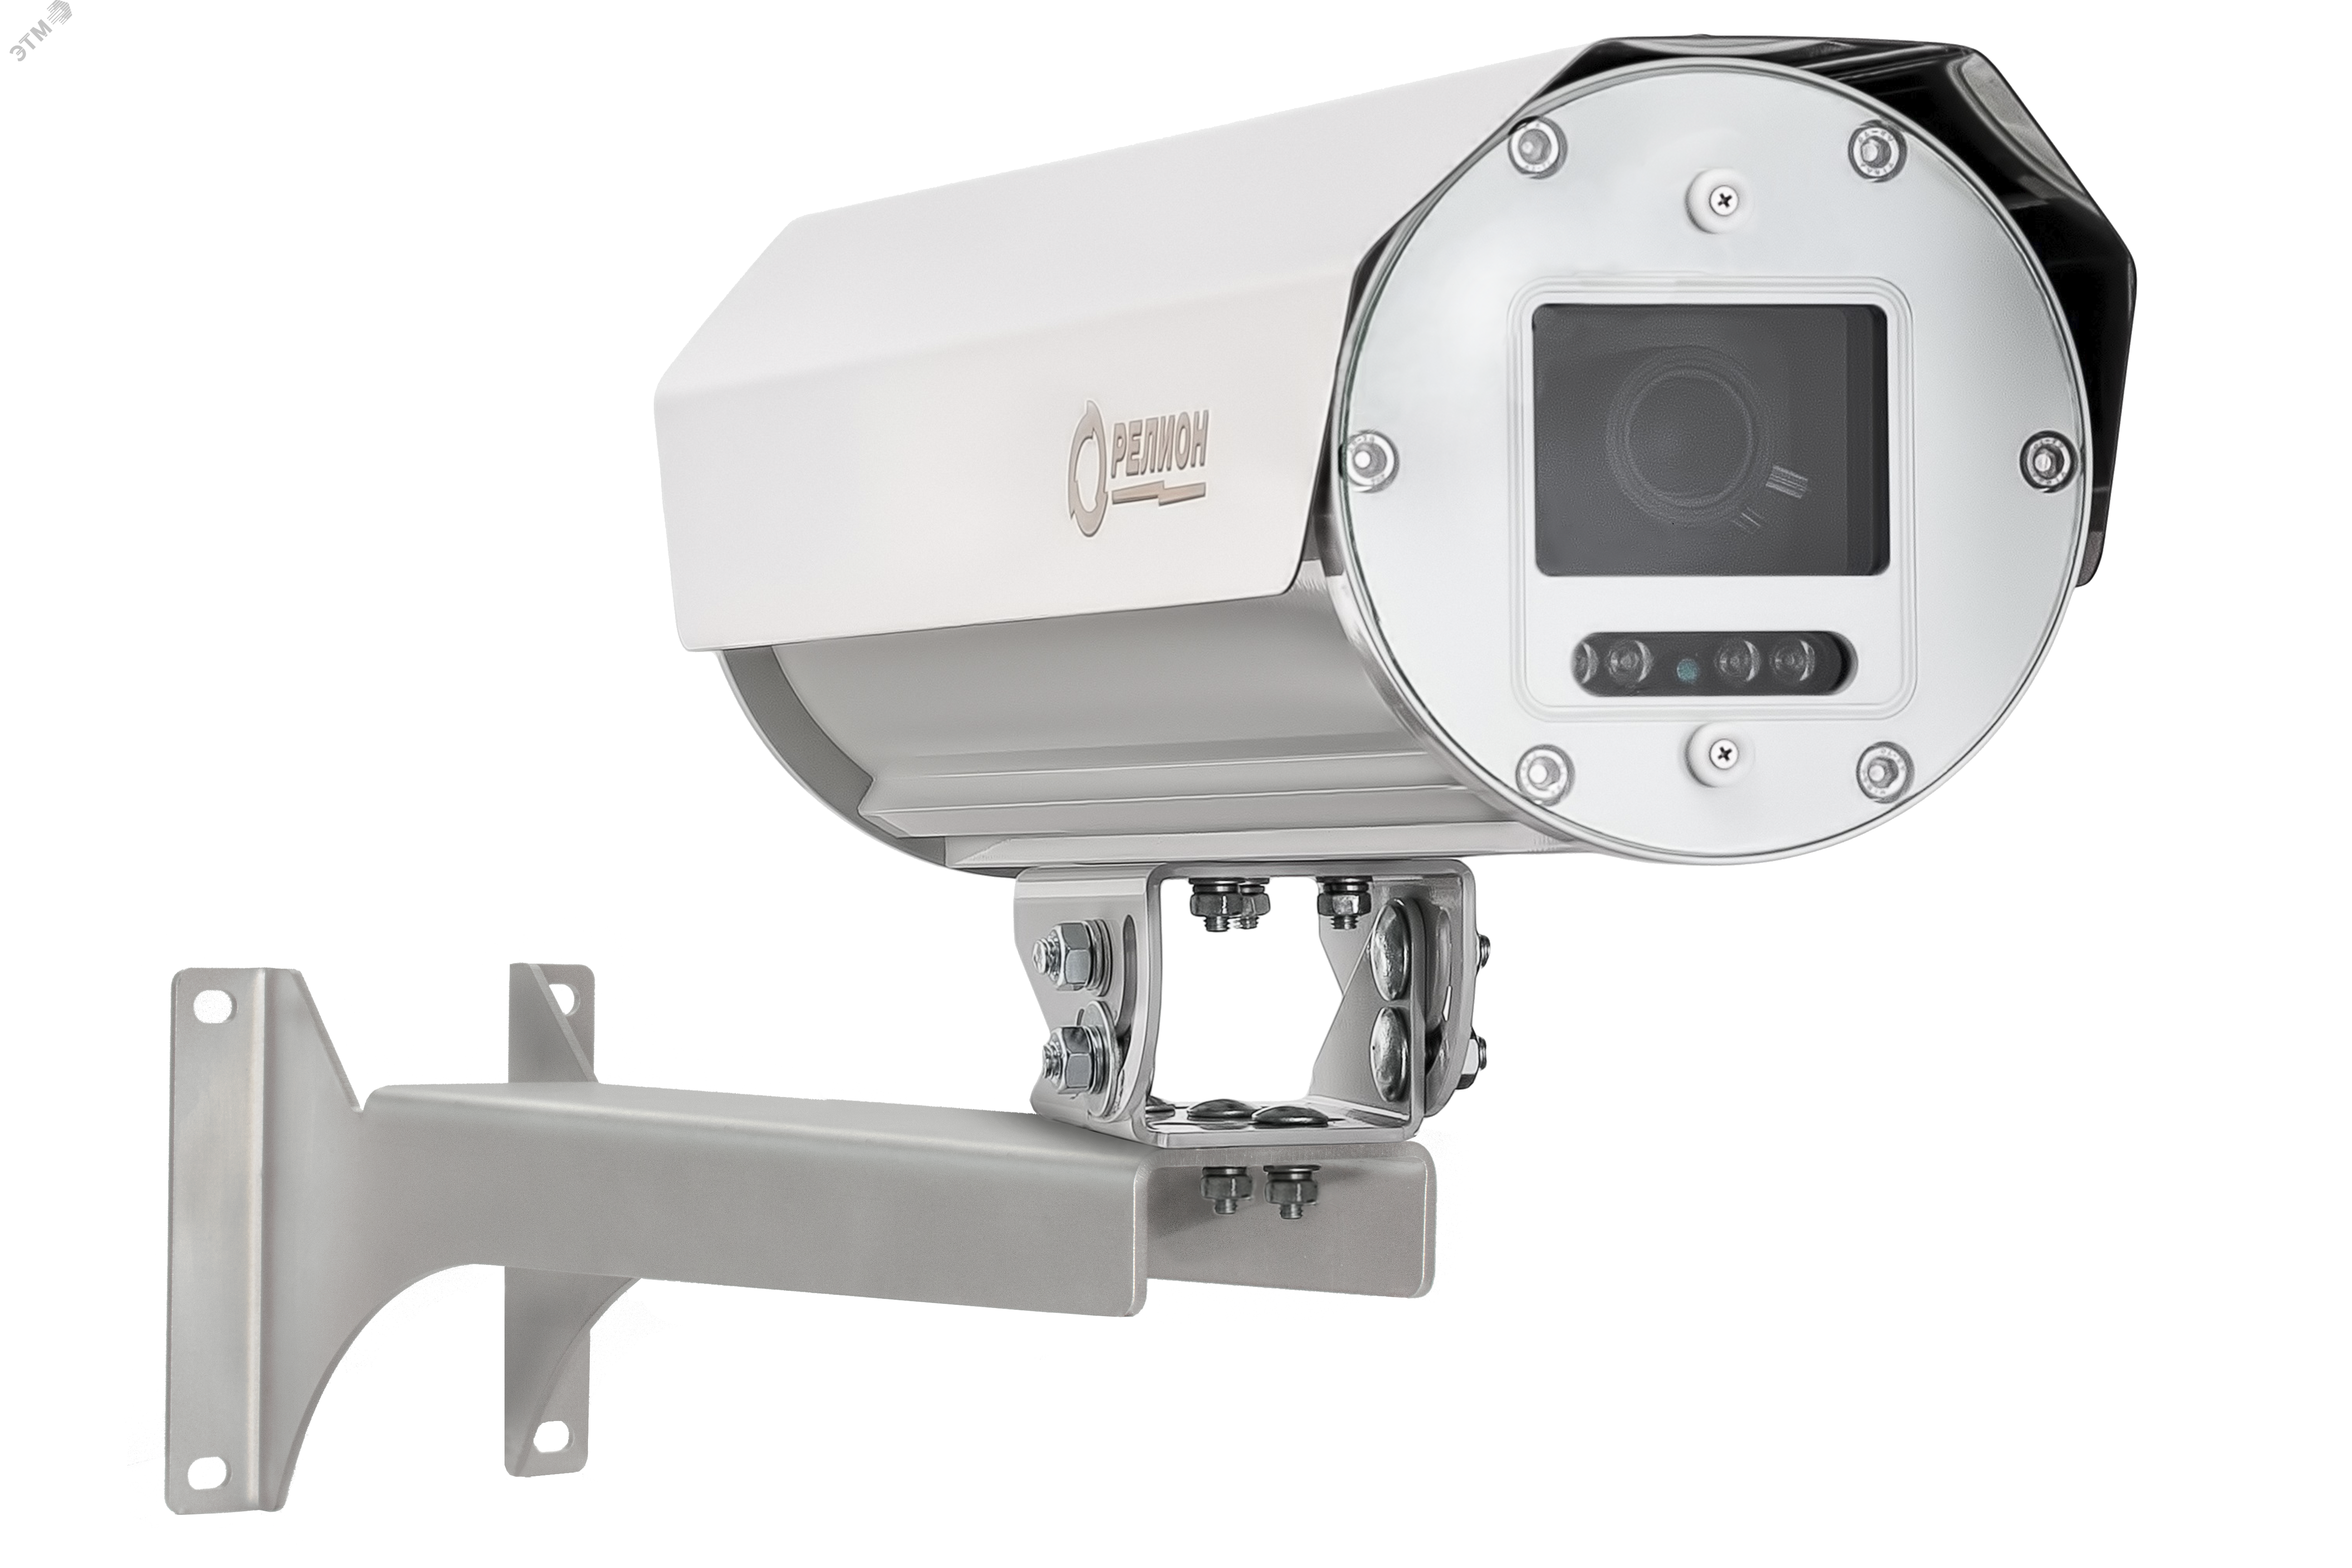 Термокожухи с встроенным ИК-прожектором -ТКВ-300-П-А-ИК исп. 11 для аналоговых и IP видеокамер из алюминиевого сплава. 00000008376 Релион